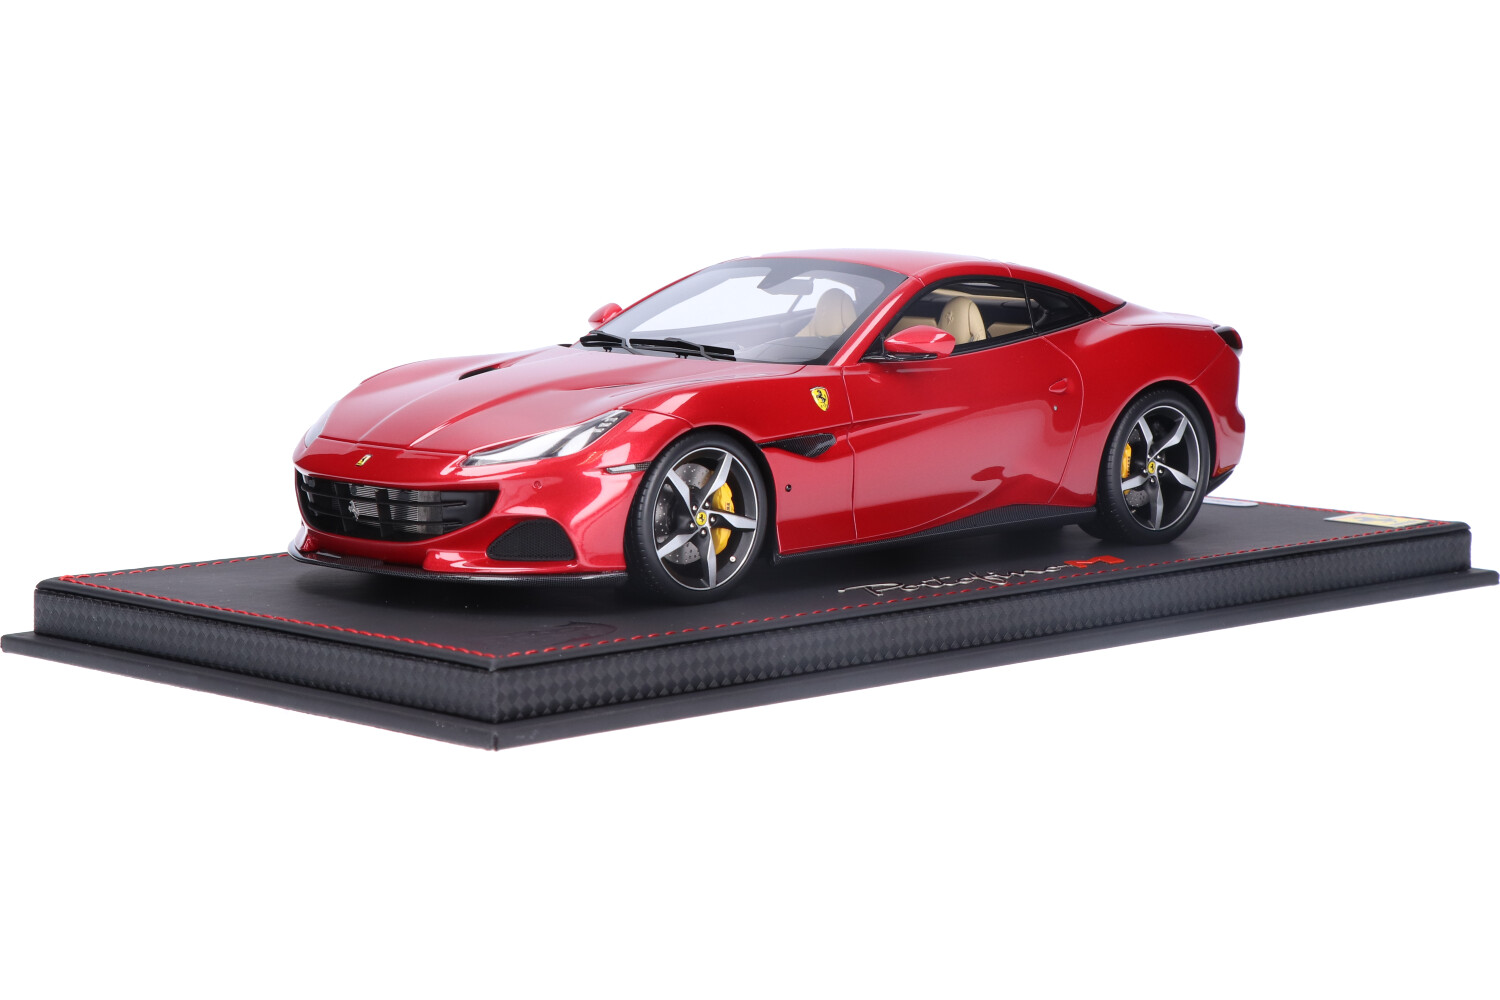 Ferrari-Portofino-M-Closed-Roof-P18197D_13158051739729511Ferrari-Portofino-M-Closed-Roof-P18197D_Houseofmodelcars_.jpg